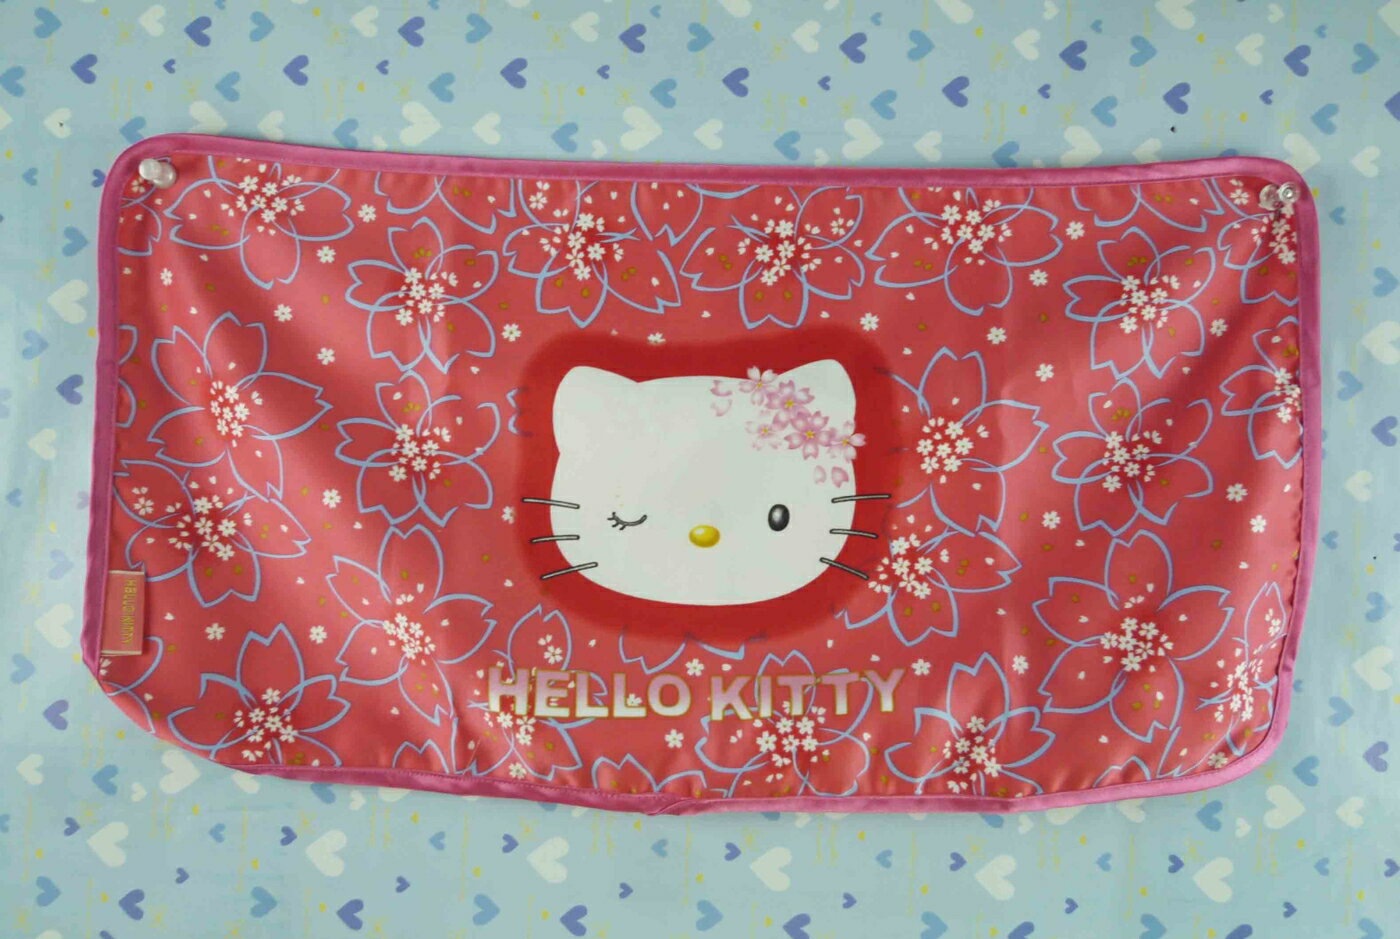 【震撼精品百貨】Hello Kitty 凱蒂貓 餐墊-櫻花紅【共1款】 震撼日式精品百貨